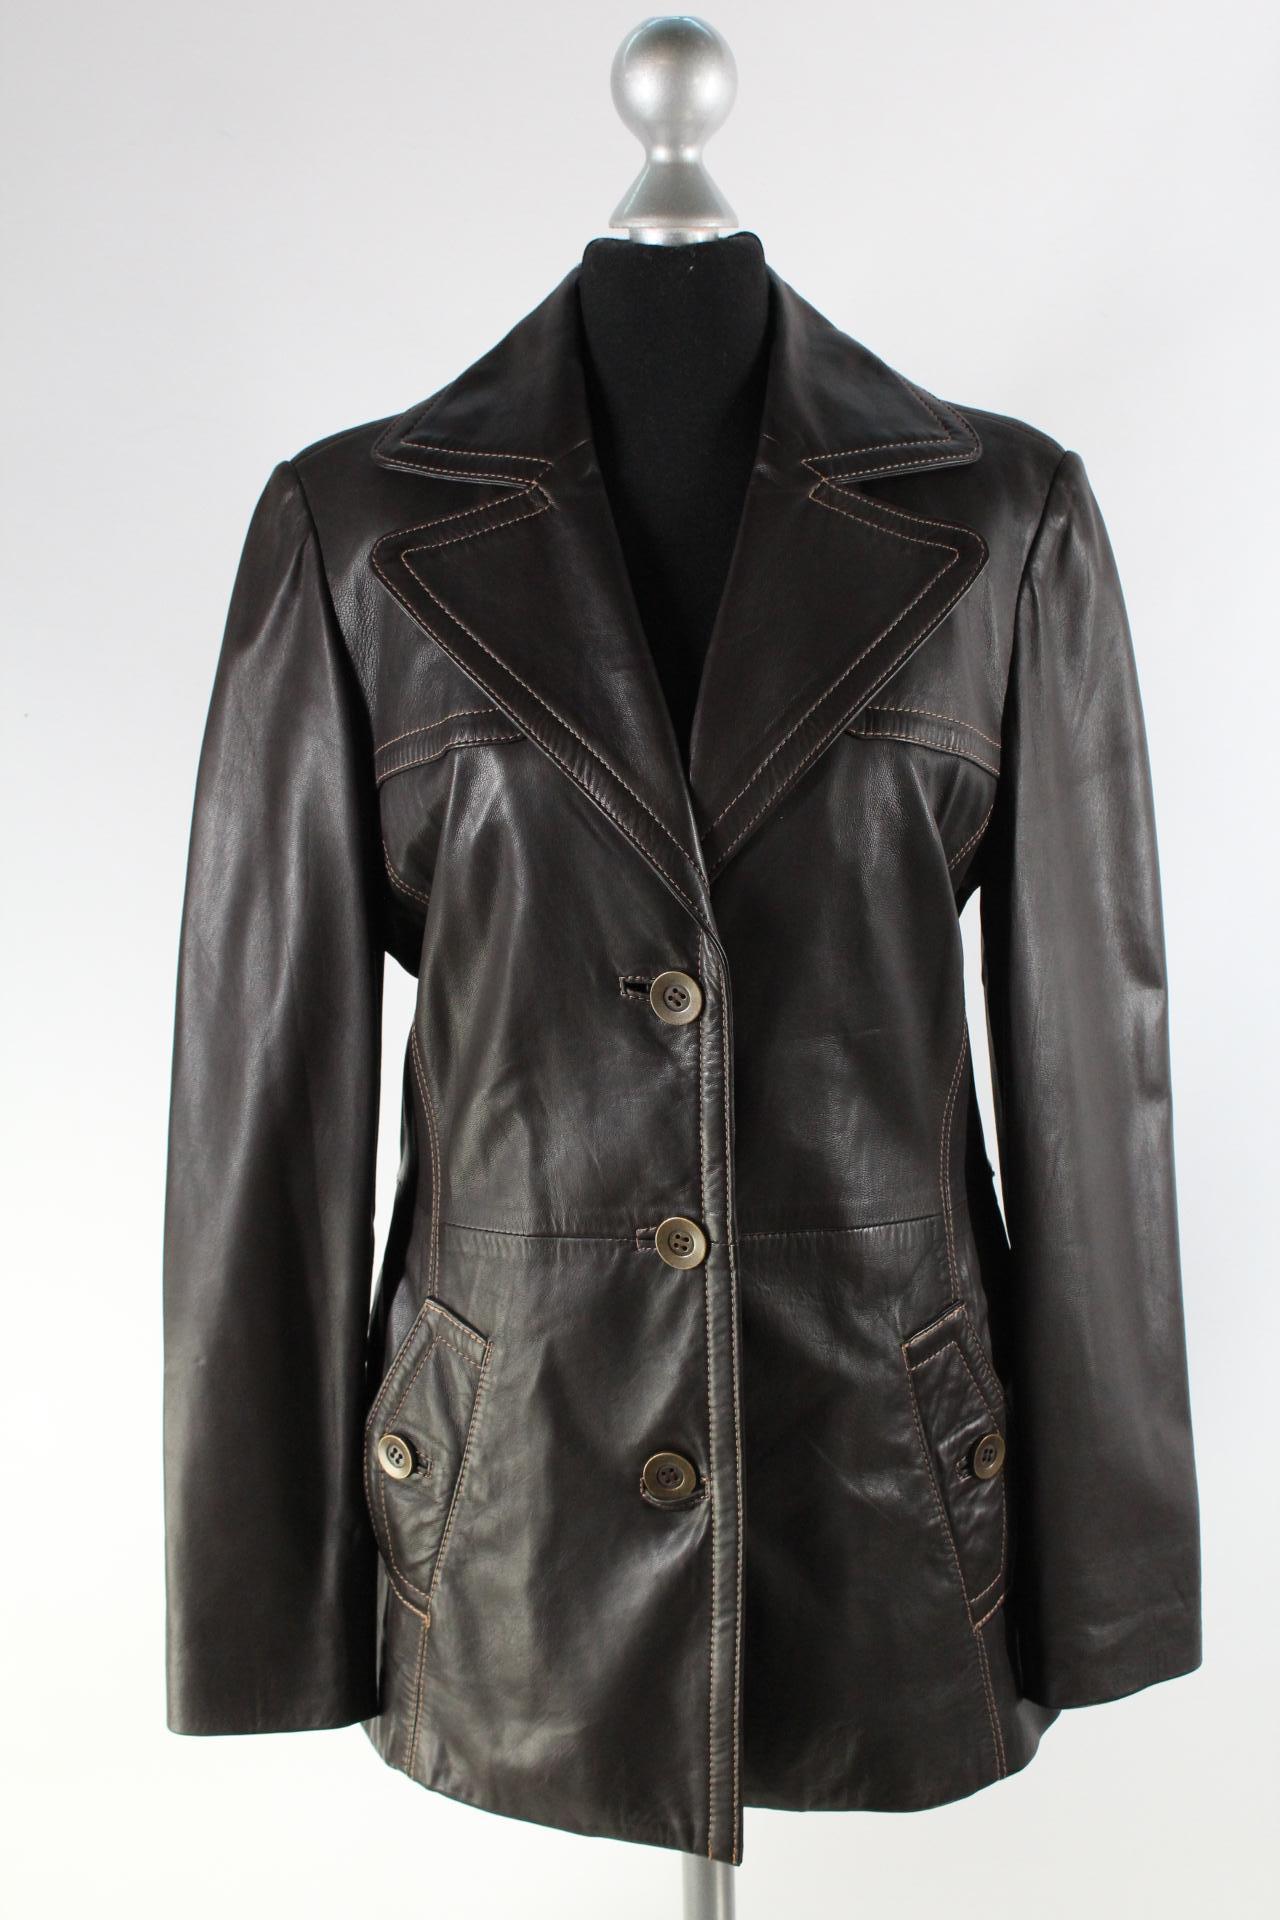 For ever Leather for you Damen-Lederjacke braun Größe 36